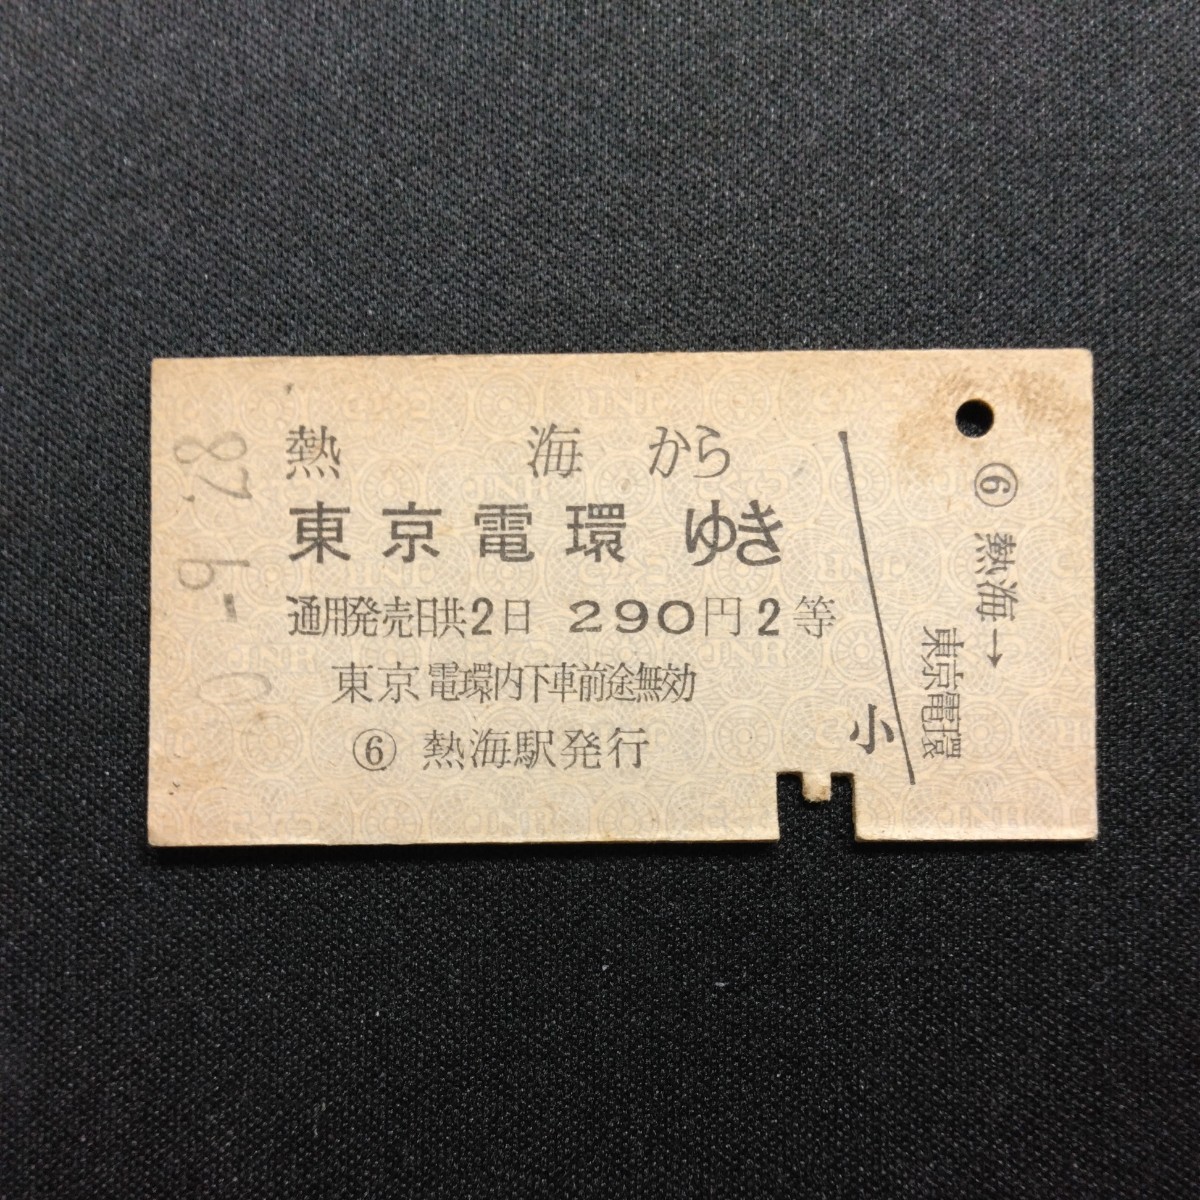 【3186】硬券 A型 2等 乗車券 熱海から 東京電環ゆき_画像1